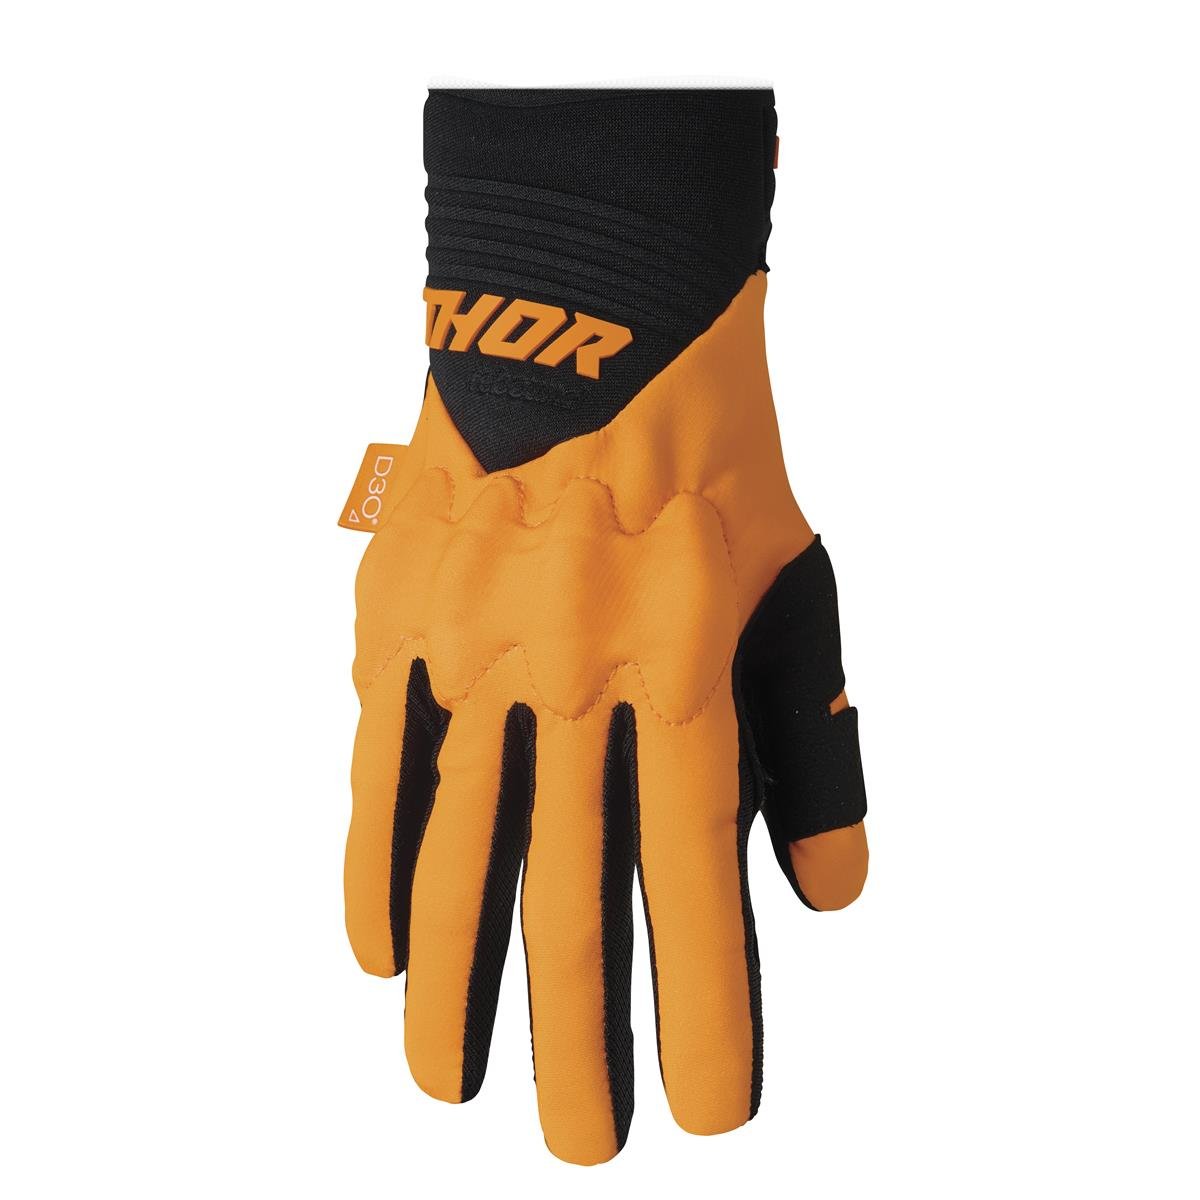 Thor Handschuhe Rebound Fluo - Orange/Schwarz